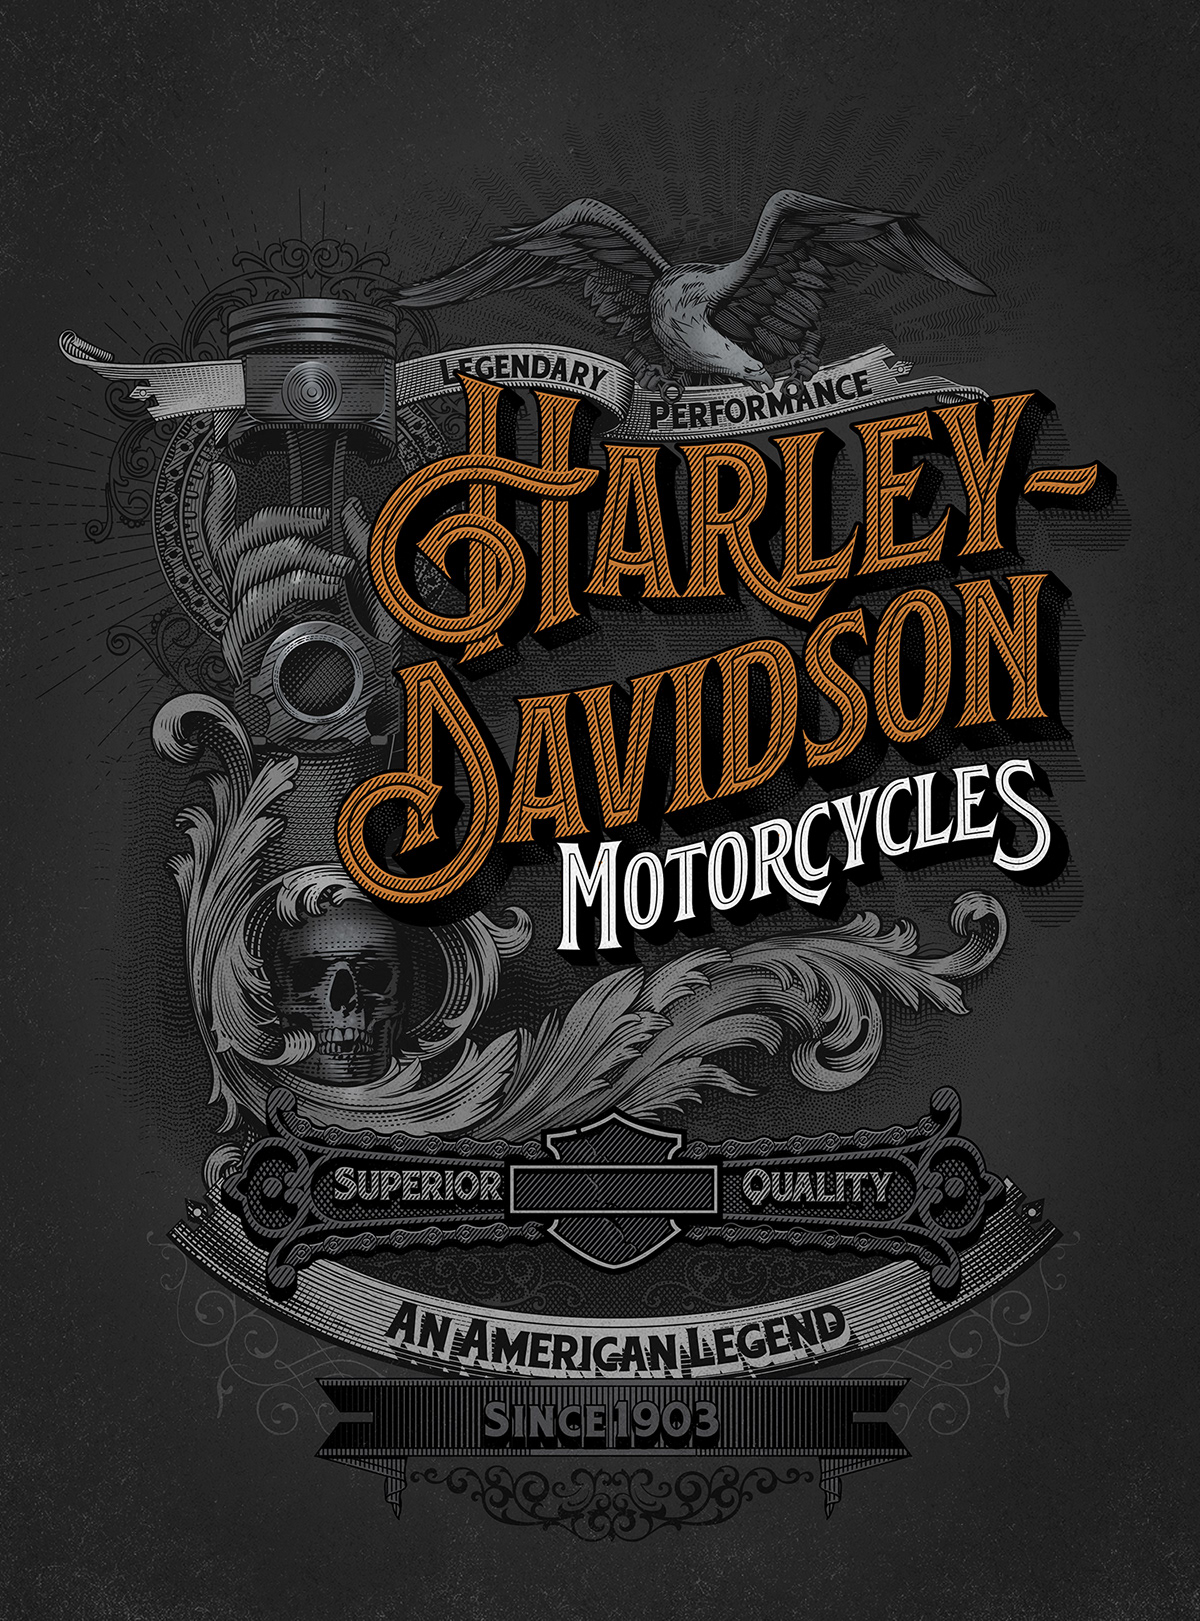 Details about   Harley Davidson  poster